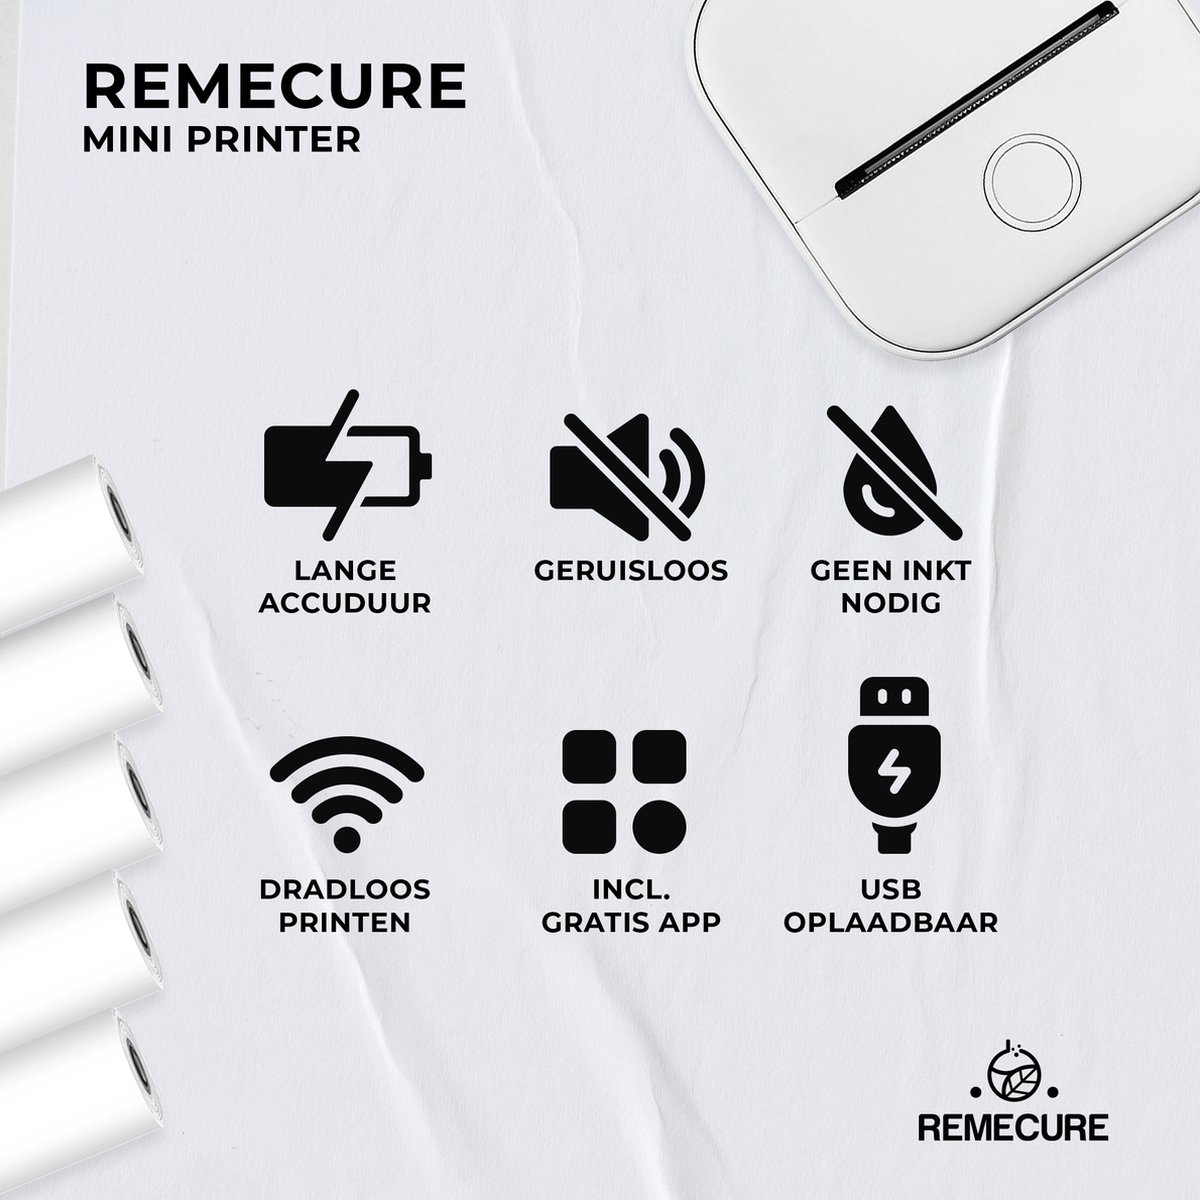 Phomemo® Mini Imprimante Photo Pour Smartphone - Incl. App & 1